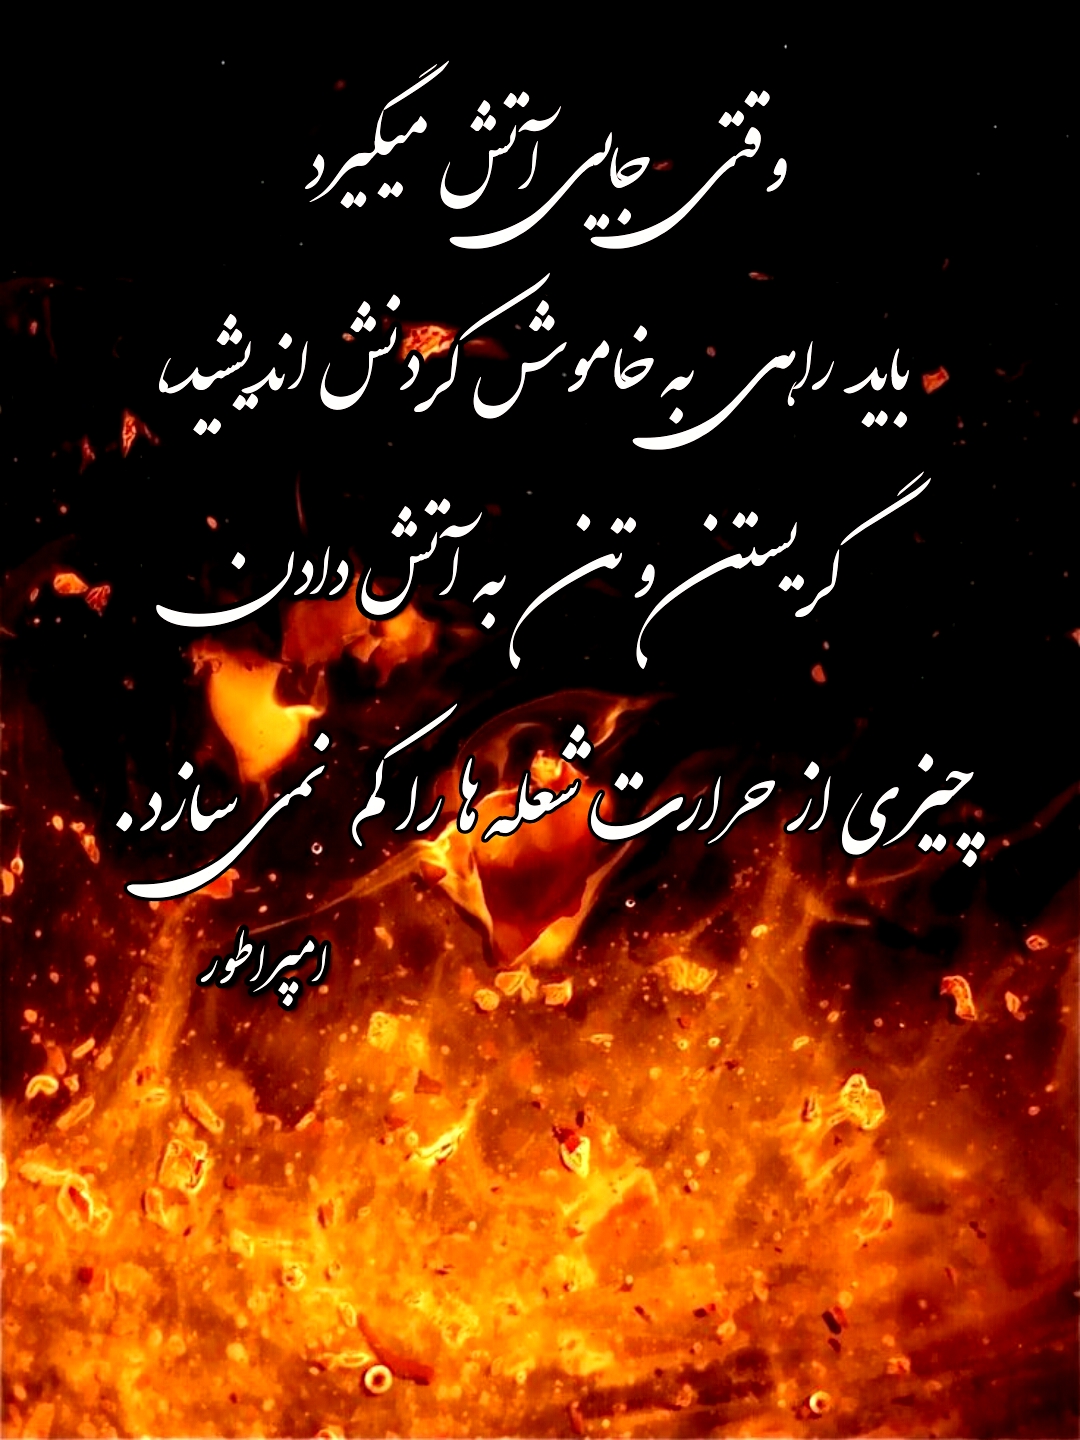 وقتی جایی آتش میگیرد، باید راهی به خاموش کردنش اندیشید، گریستن و تن به آتش دادن، چیزی از حرارت شعله ها را کم نمی سازد. احمد محمود امپراطور 